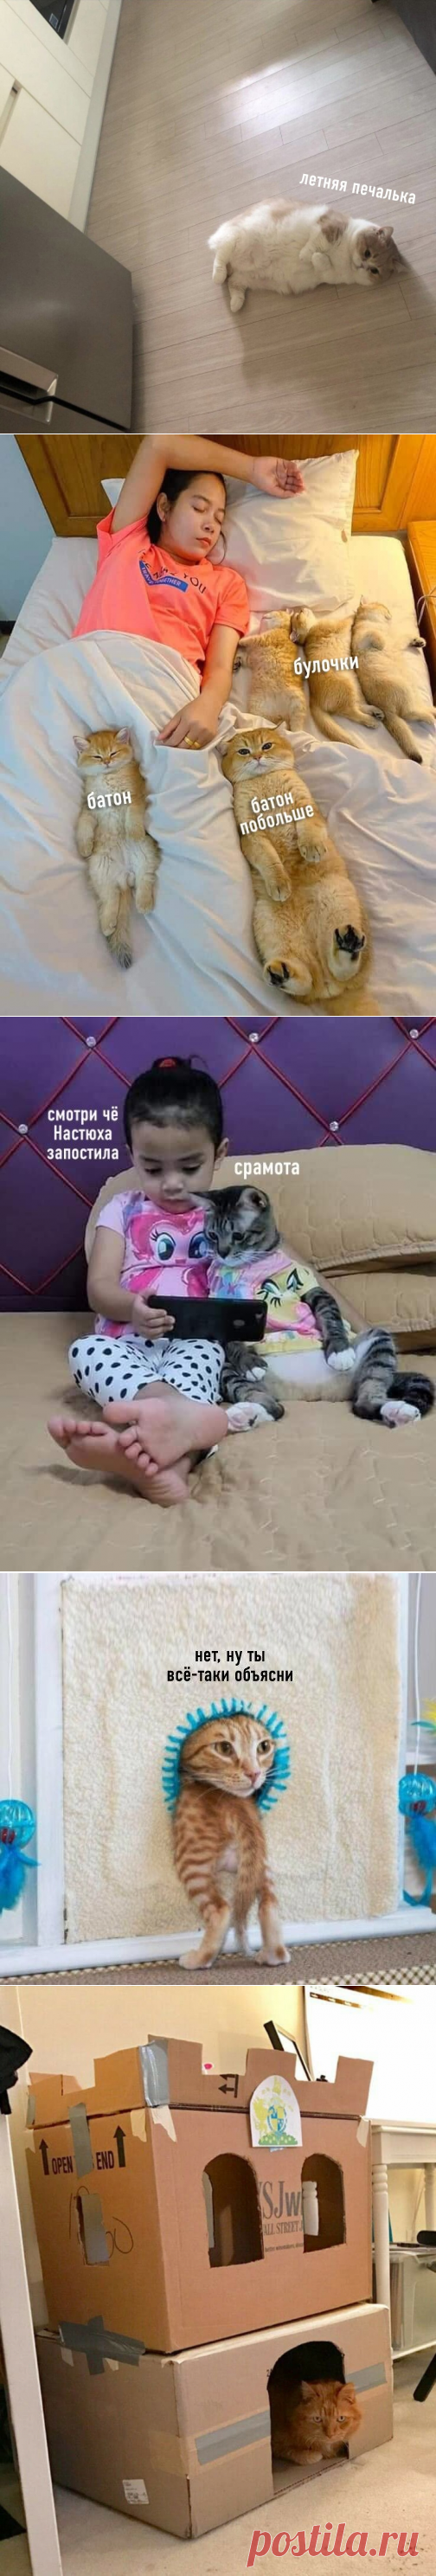 Подборка самых смешных Котиков-19! Смешные картинки с котами! | Bismarck Cats | Яндекс Дзен